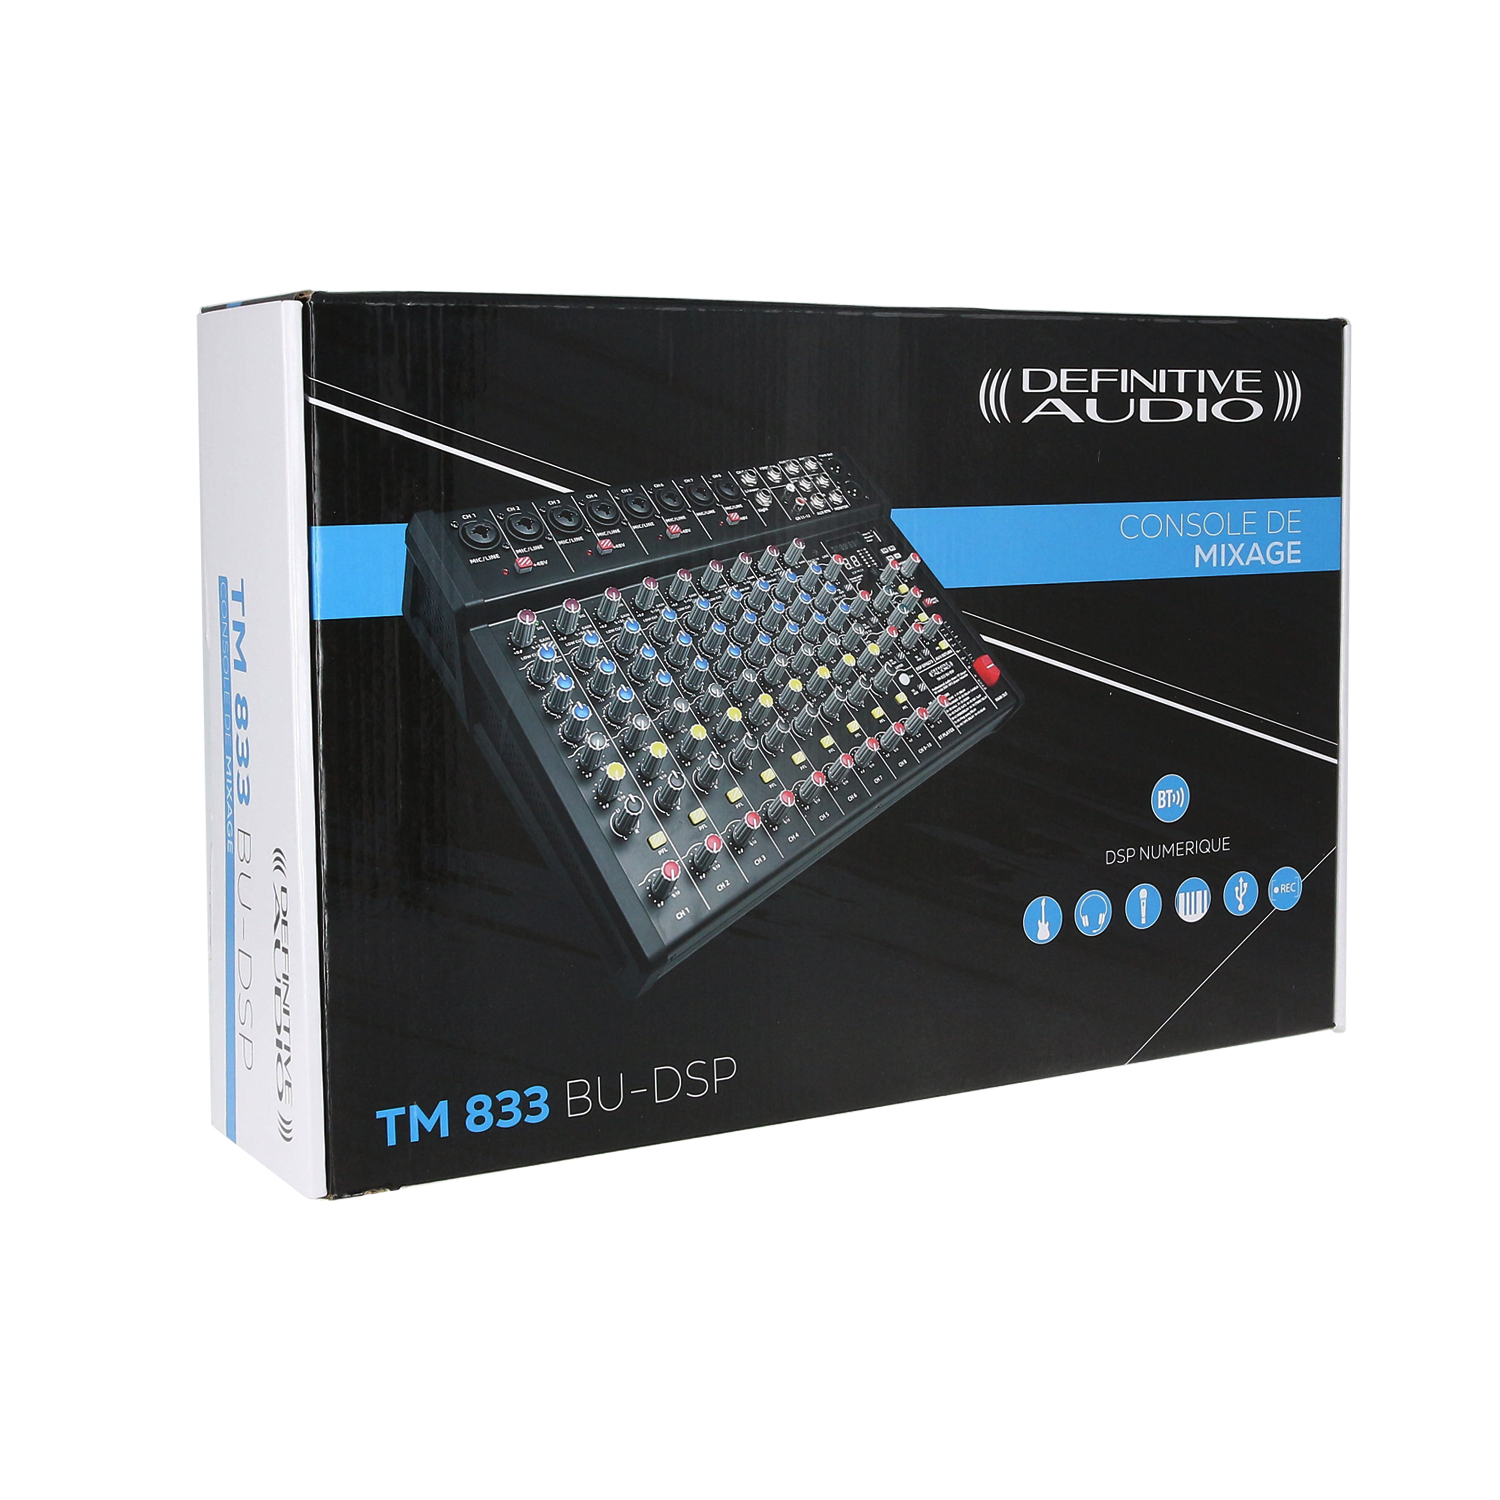 Definitive Audio Tm 833 Bu-dsp - Table De Mixage Analogique - Variation 7